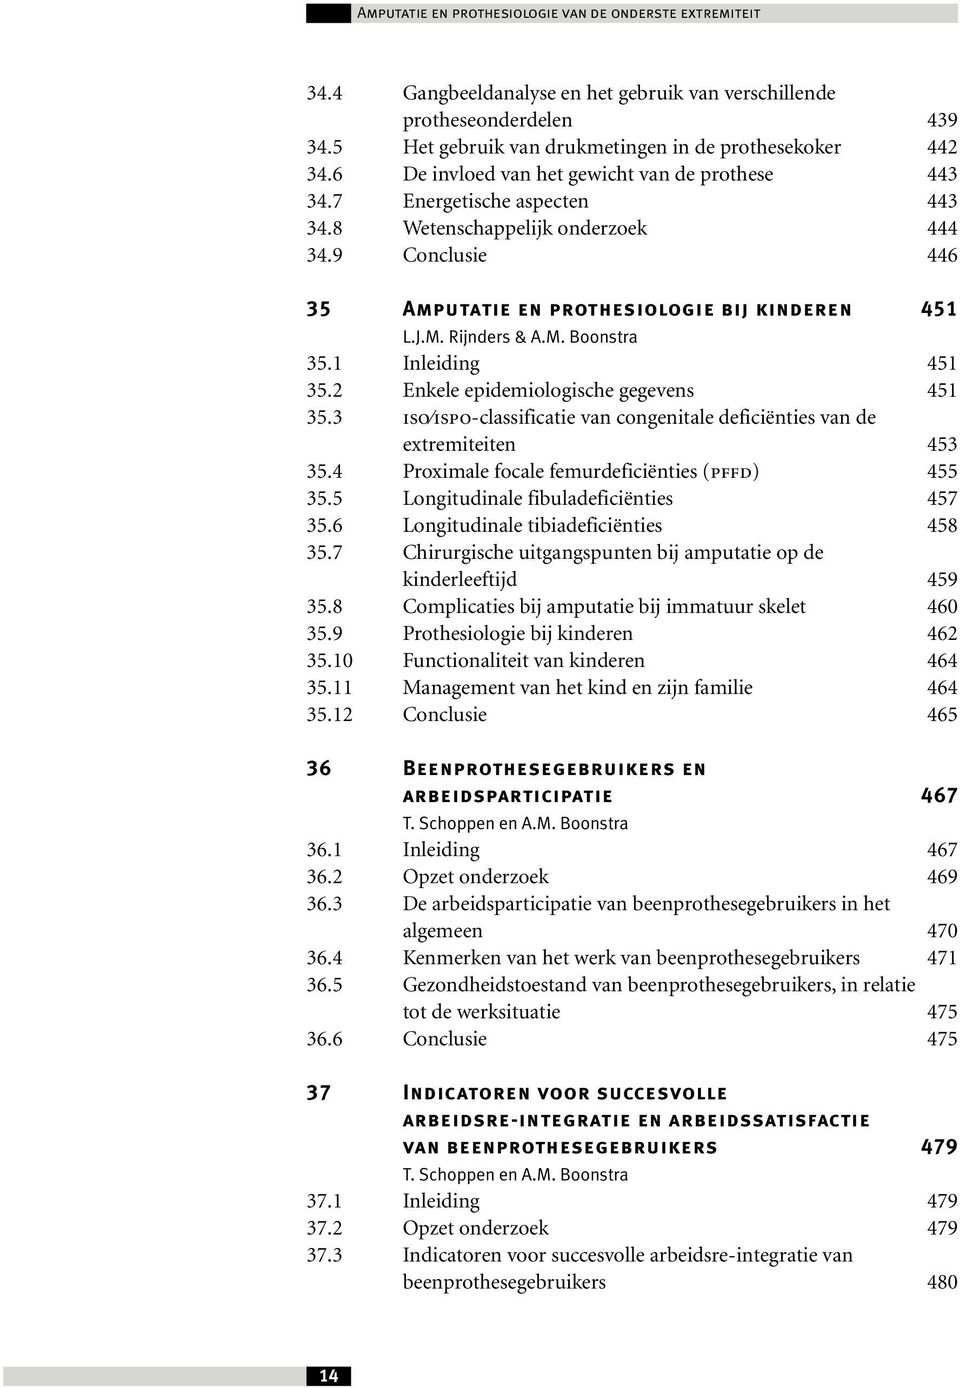 Rijnders & A.M. Boonstra 35.1 Inleiding 451 35.2 Enkele epidemiologische gegevens 451 35.3 ISO ISPO-classificatie van congenitale deficiënties van de extremiteiten 453 35.